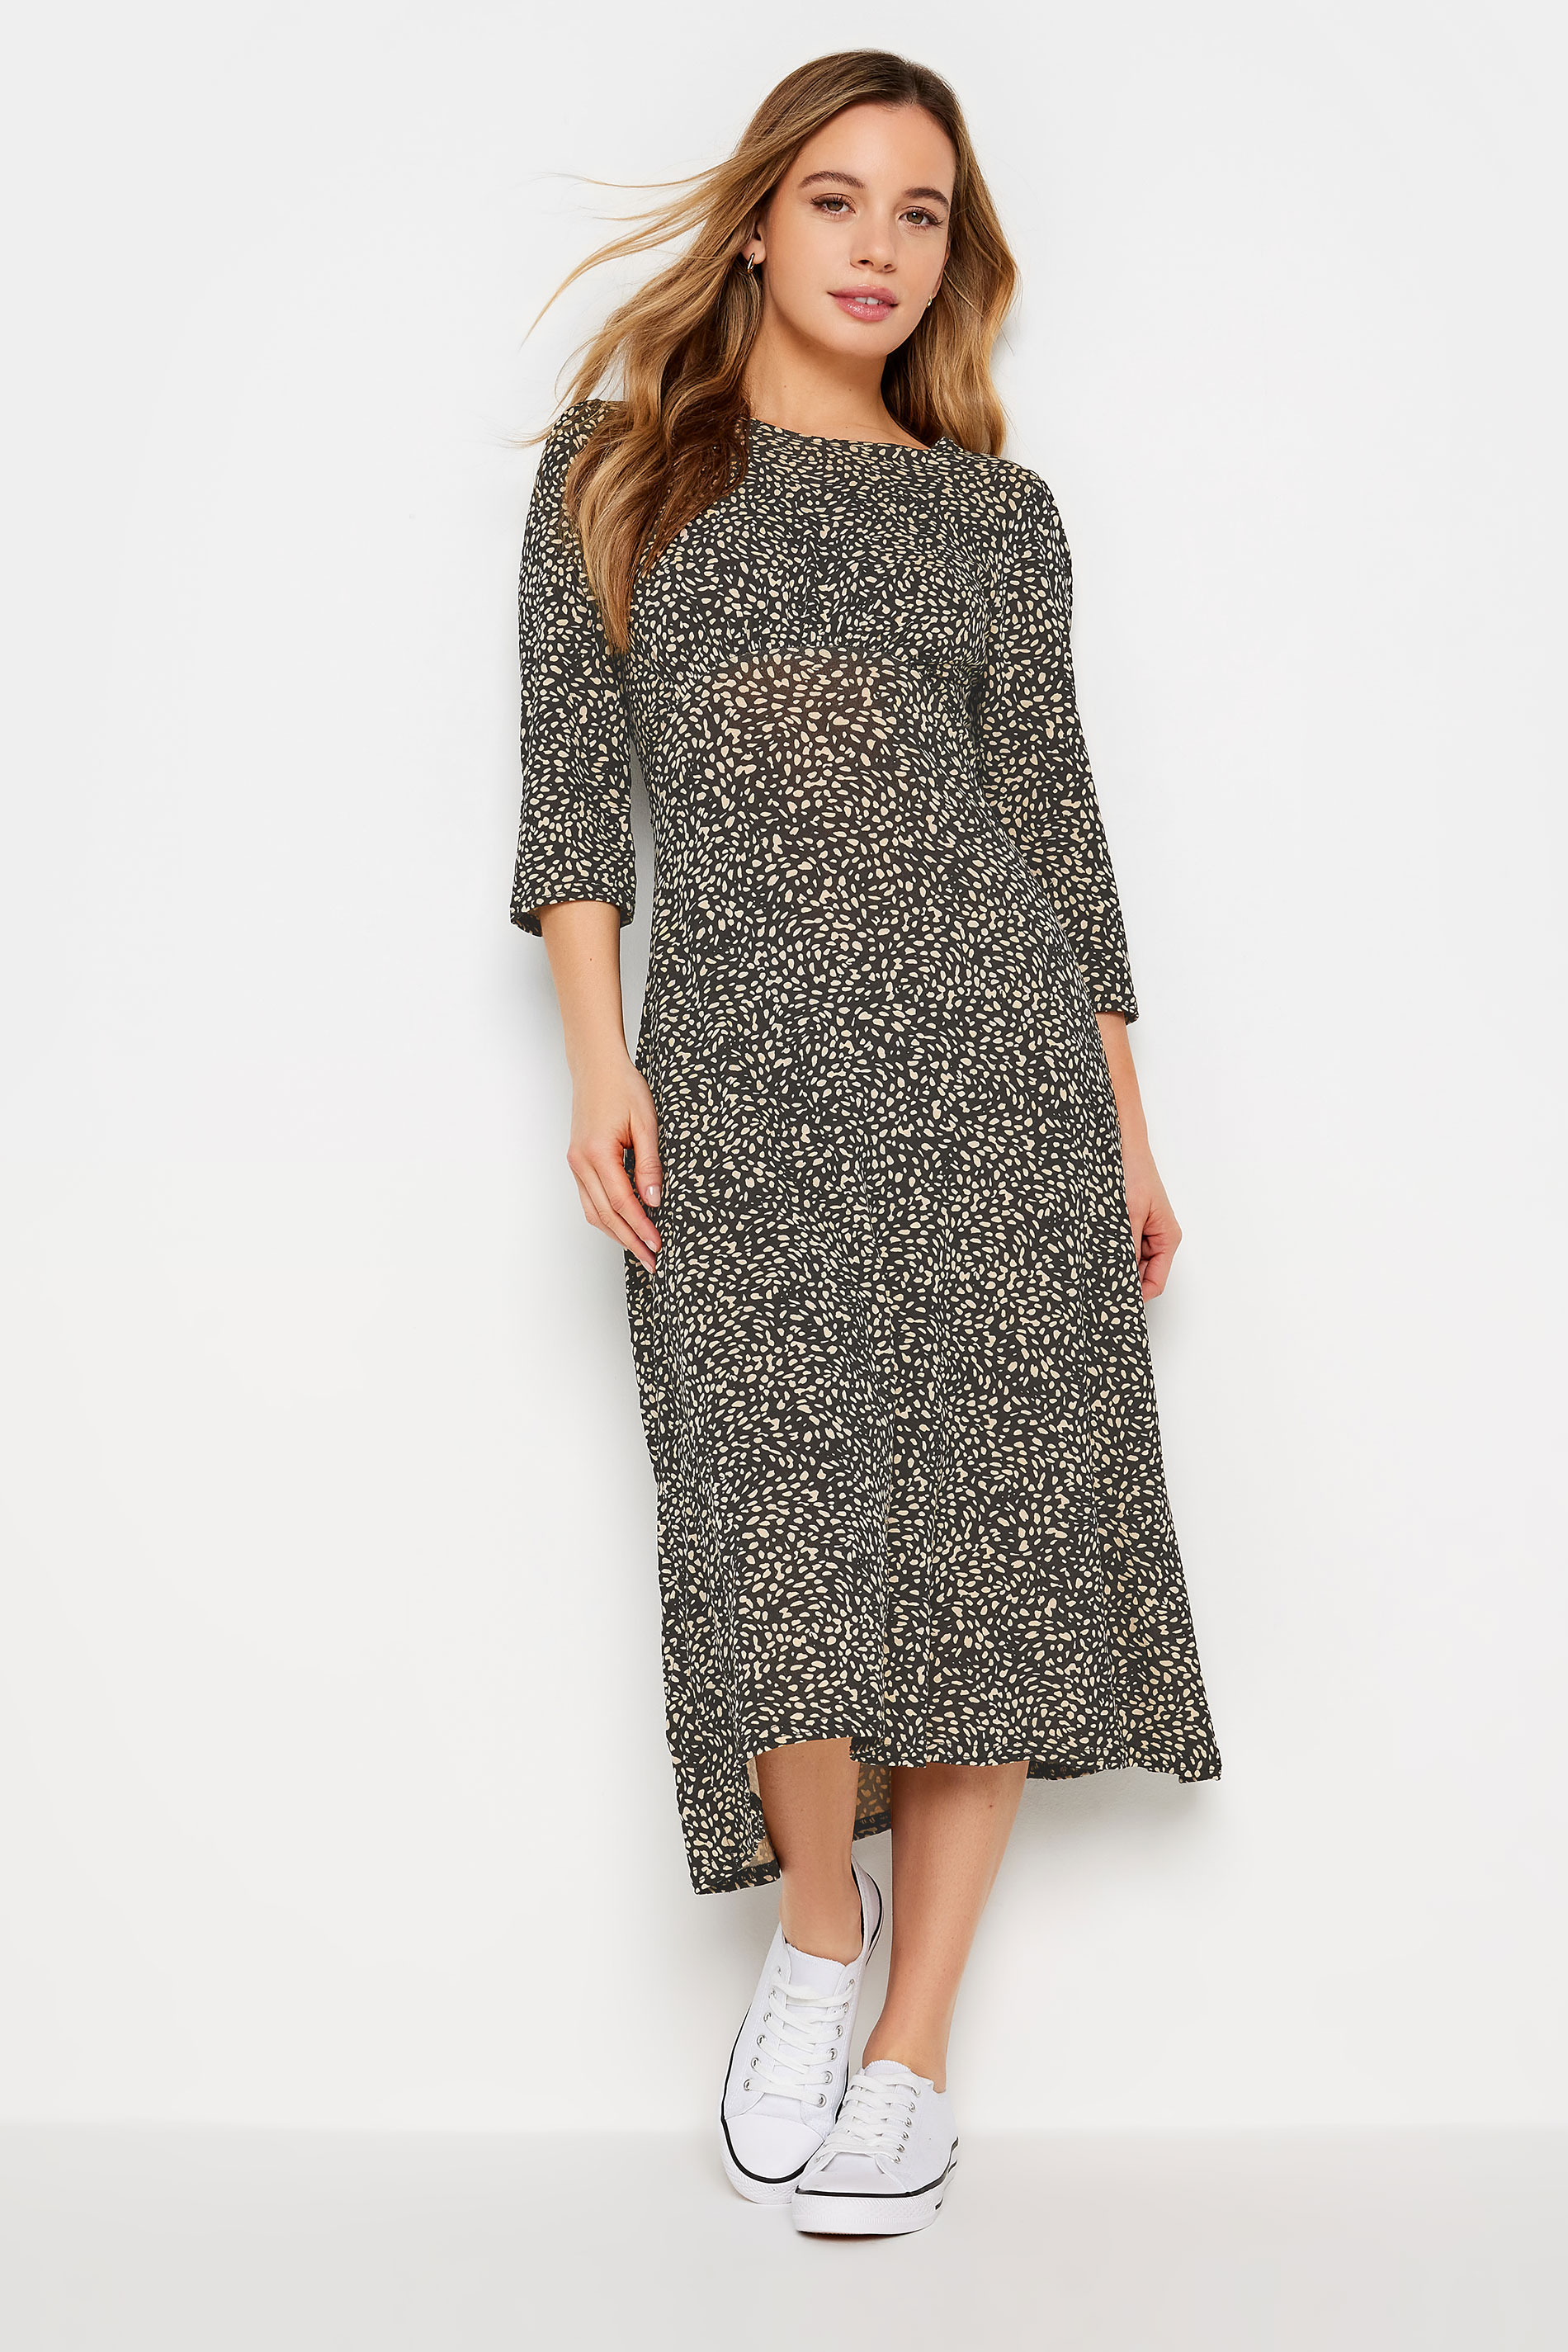 M&Co Petite Black Spot Print Midi Dress | M&Co 1